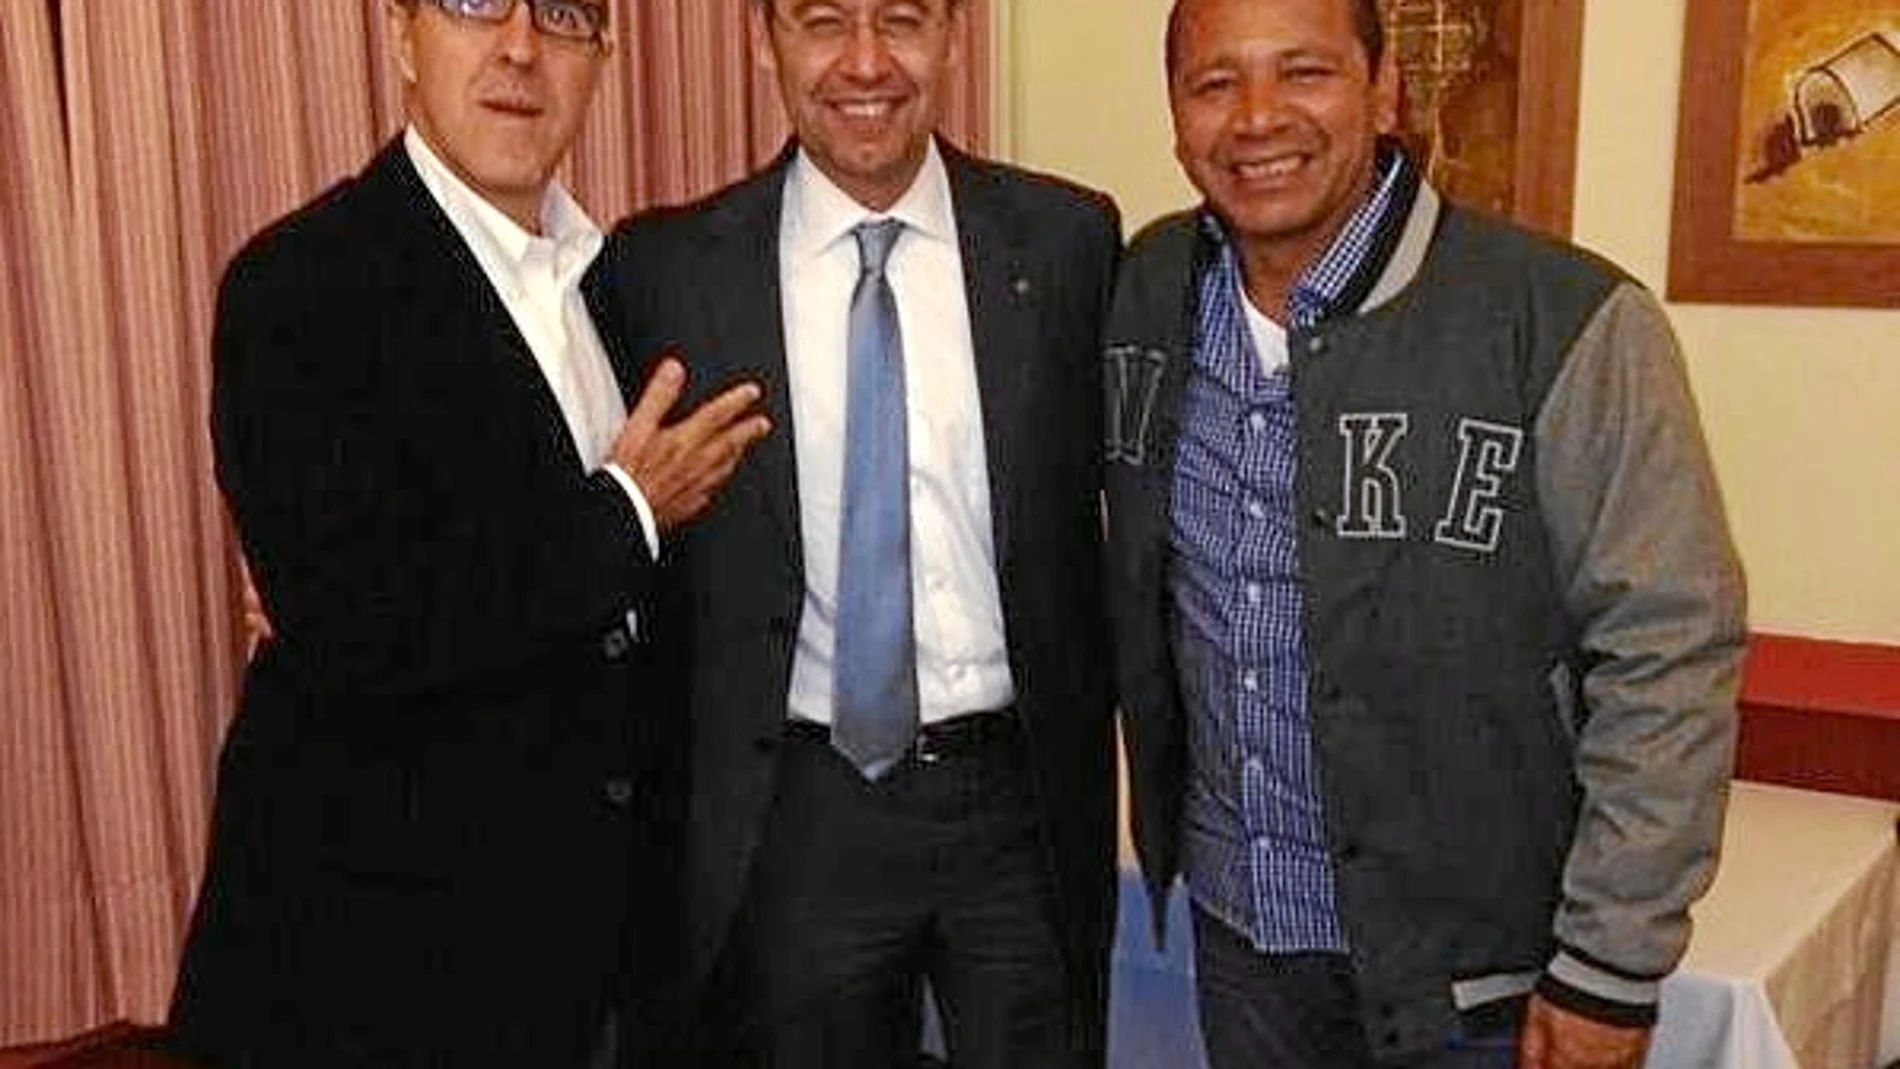 El padre de Neymar, el presidente del Barcelona, Josep Maria Bartomeu, y el agente que gestionó el fichaje del jugador brasileño, Wagner Ribeiro, cenaron el lunes en un restaurante de Barcelona